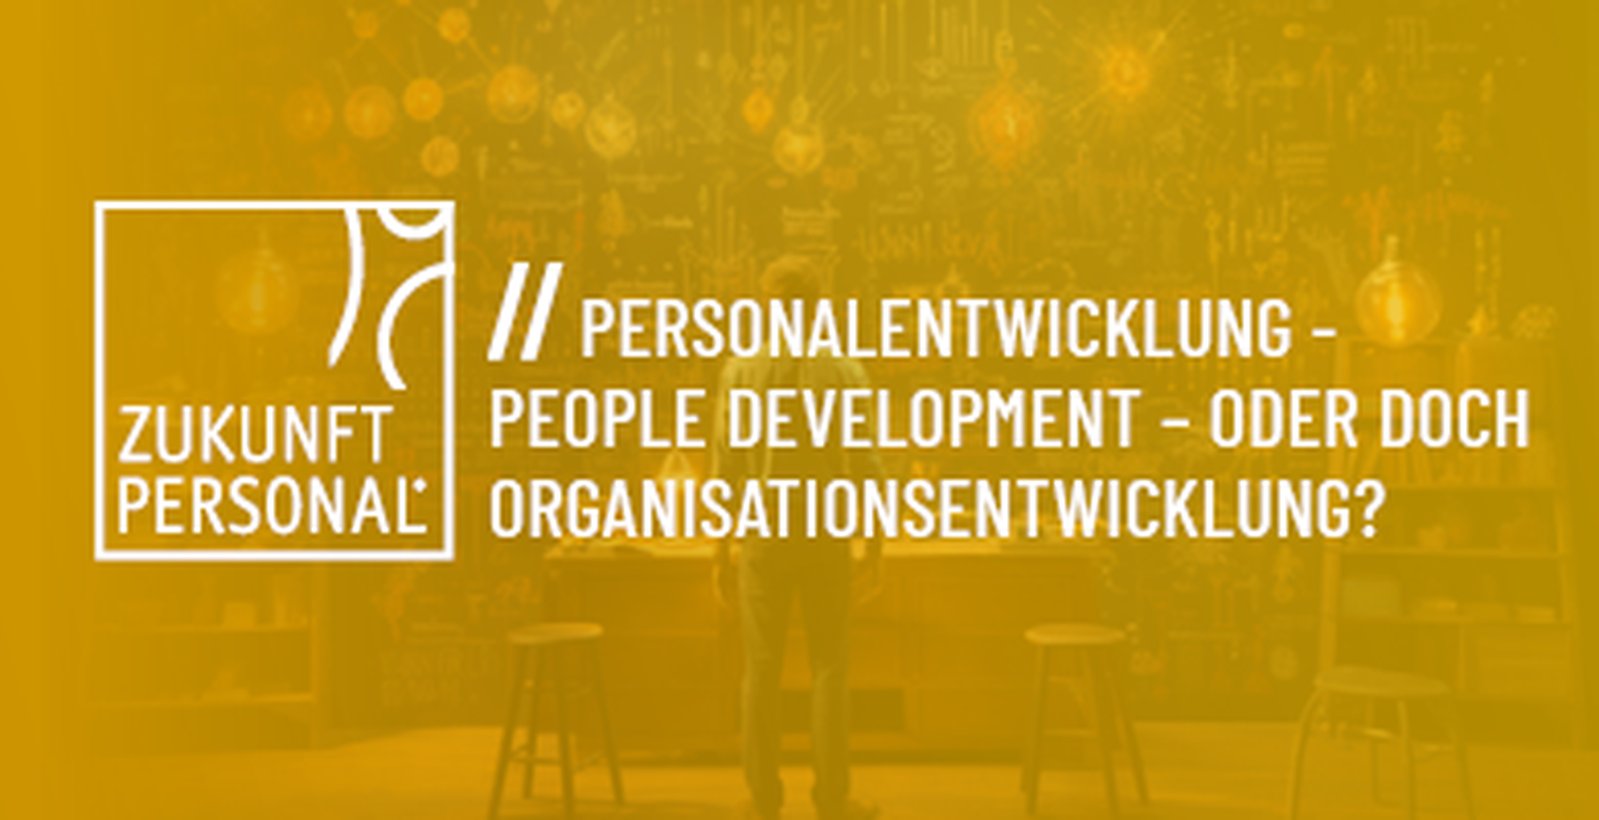 Personalentwicklung - People Development – oder doch Organisationsentwicklung?